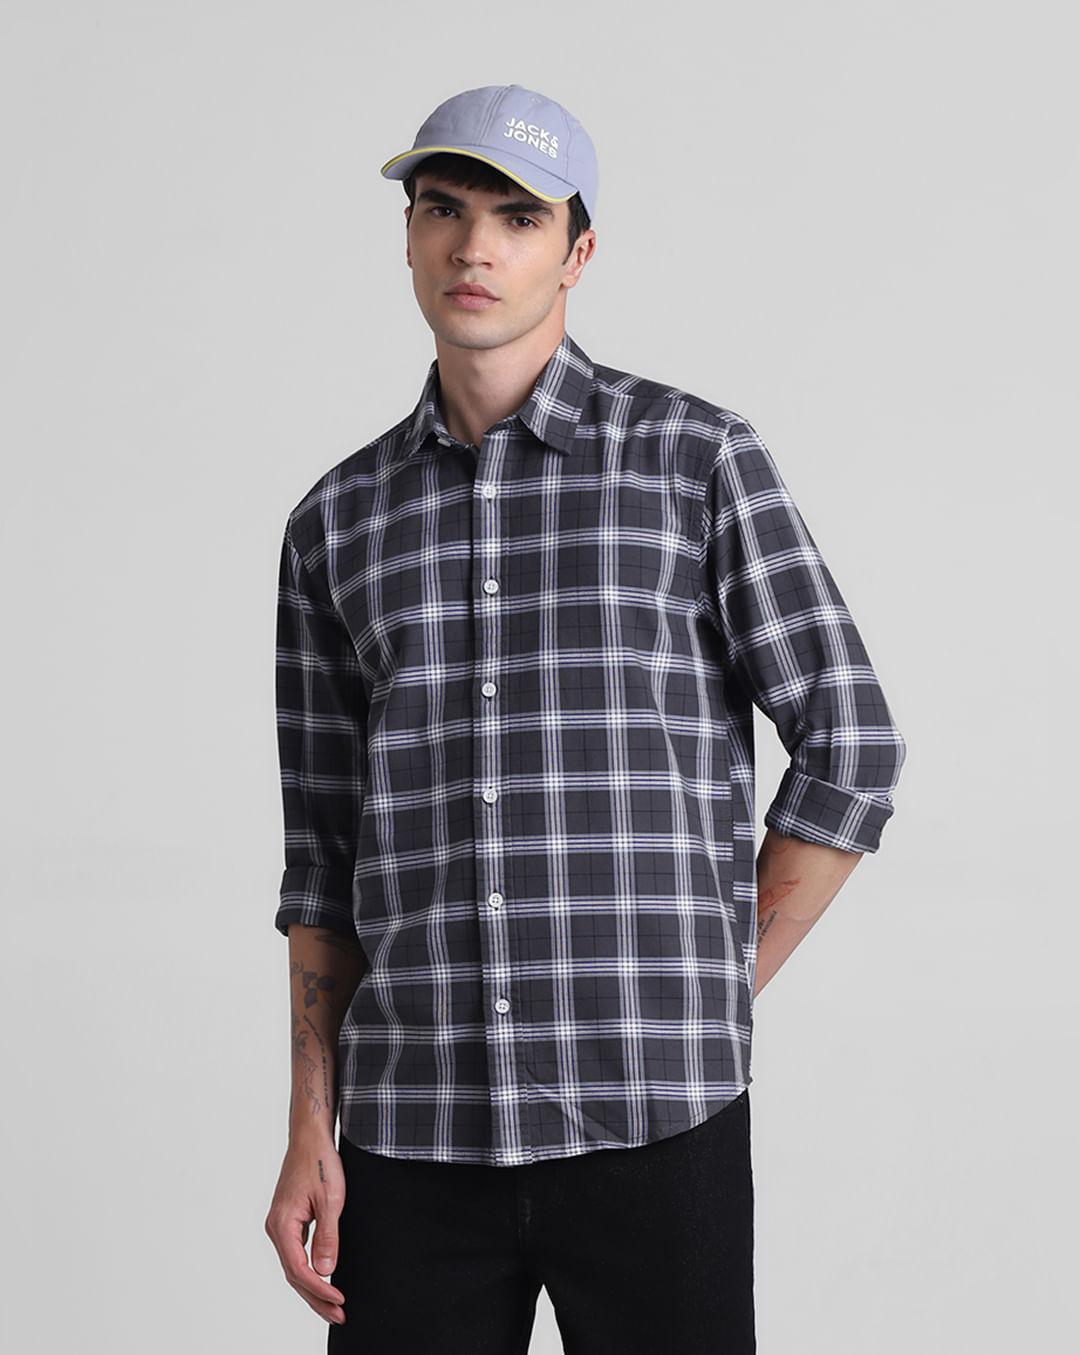 grey-check-full-sleeves-shirt